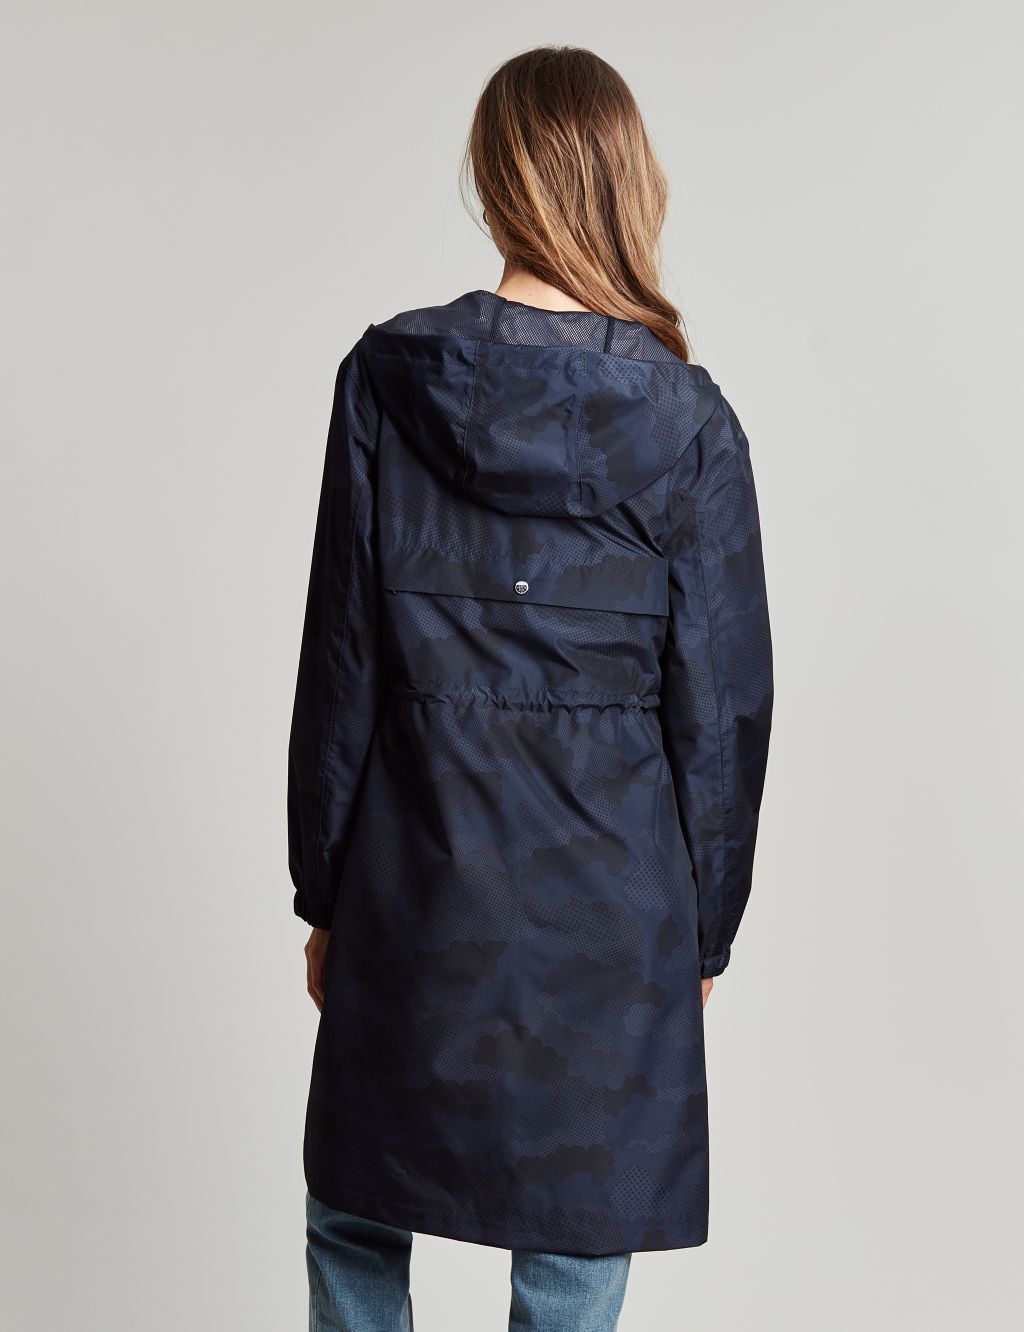 Waterproof Printed Hooded Longline Raincoat image 6